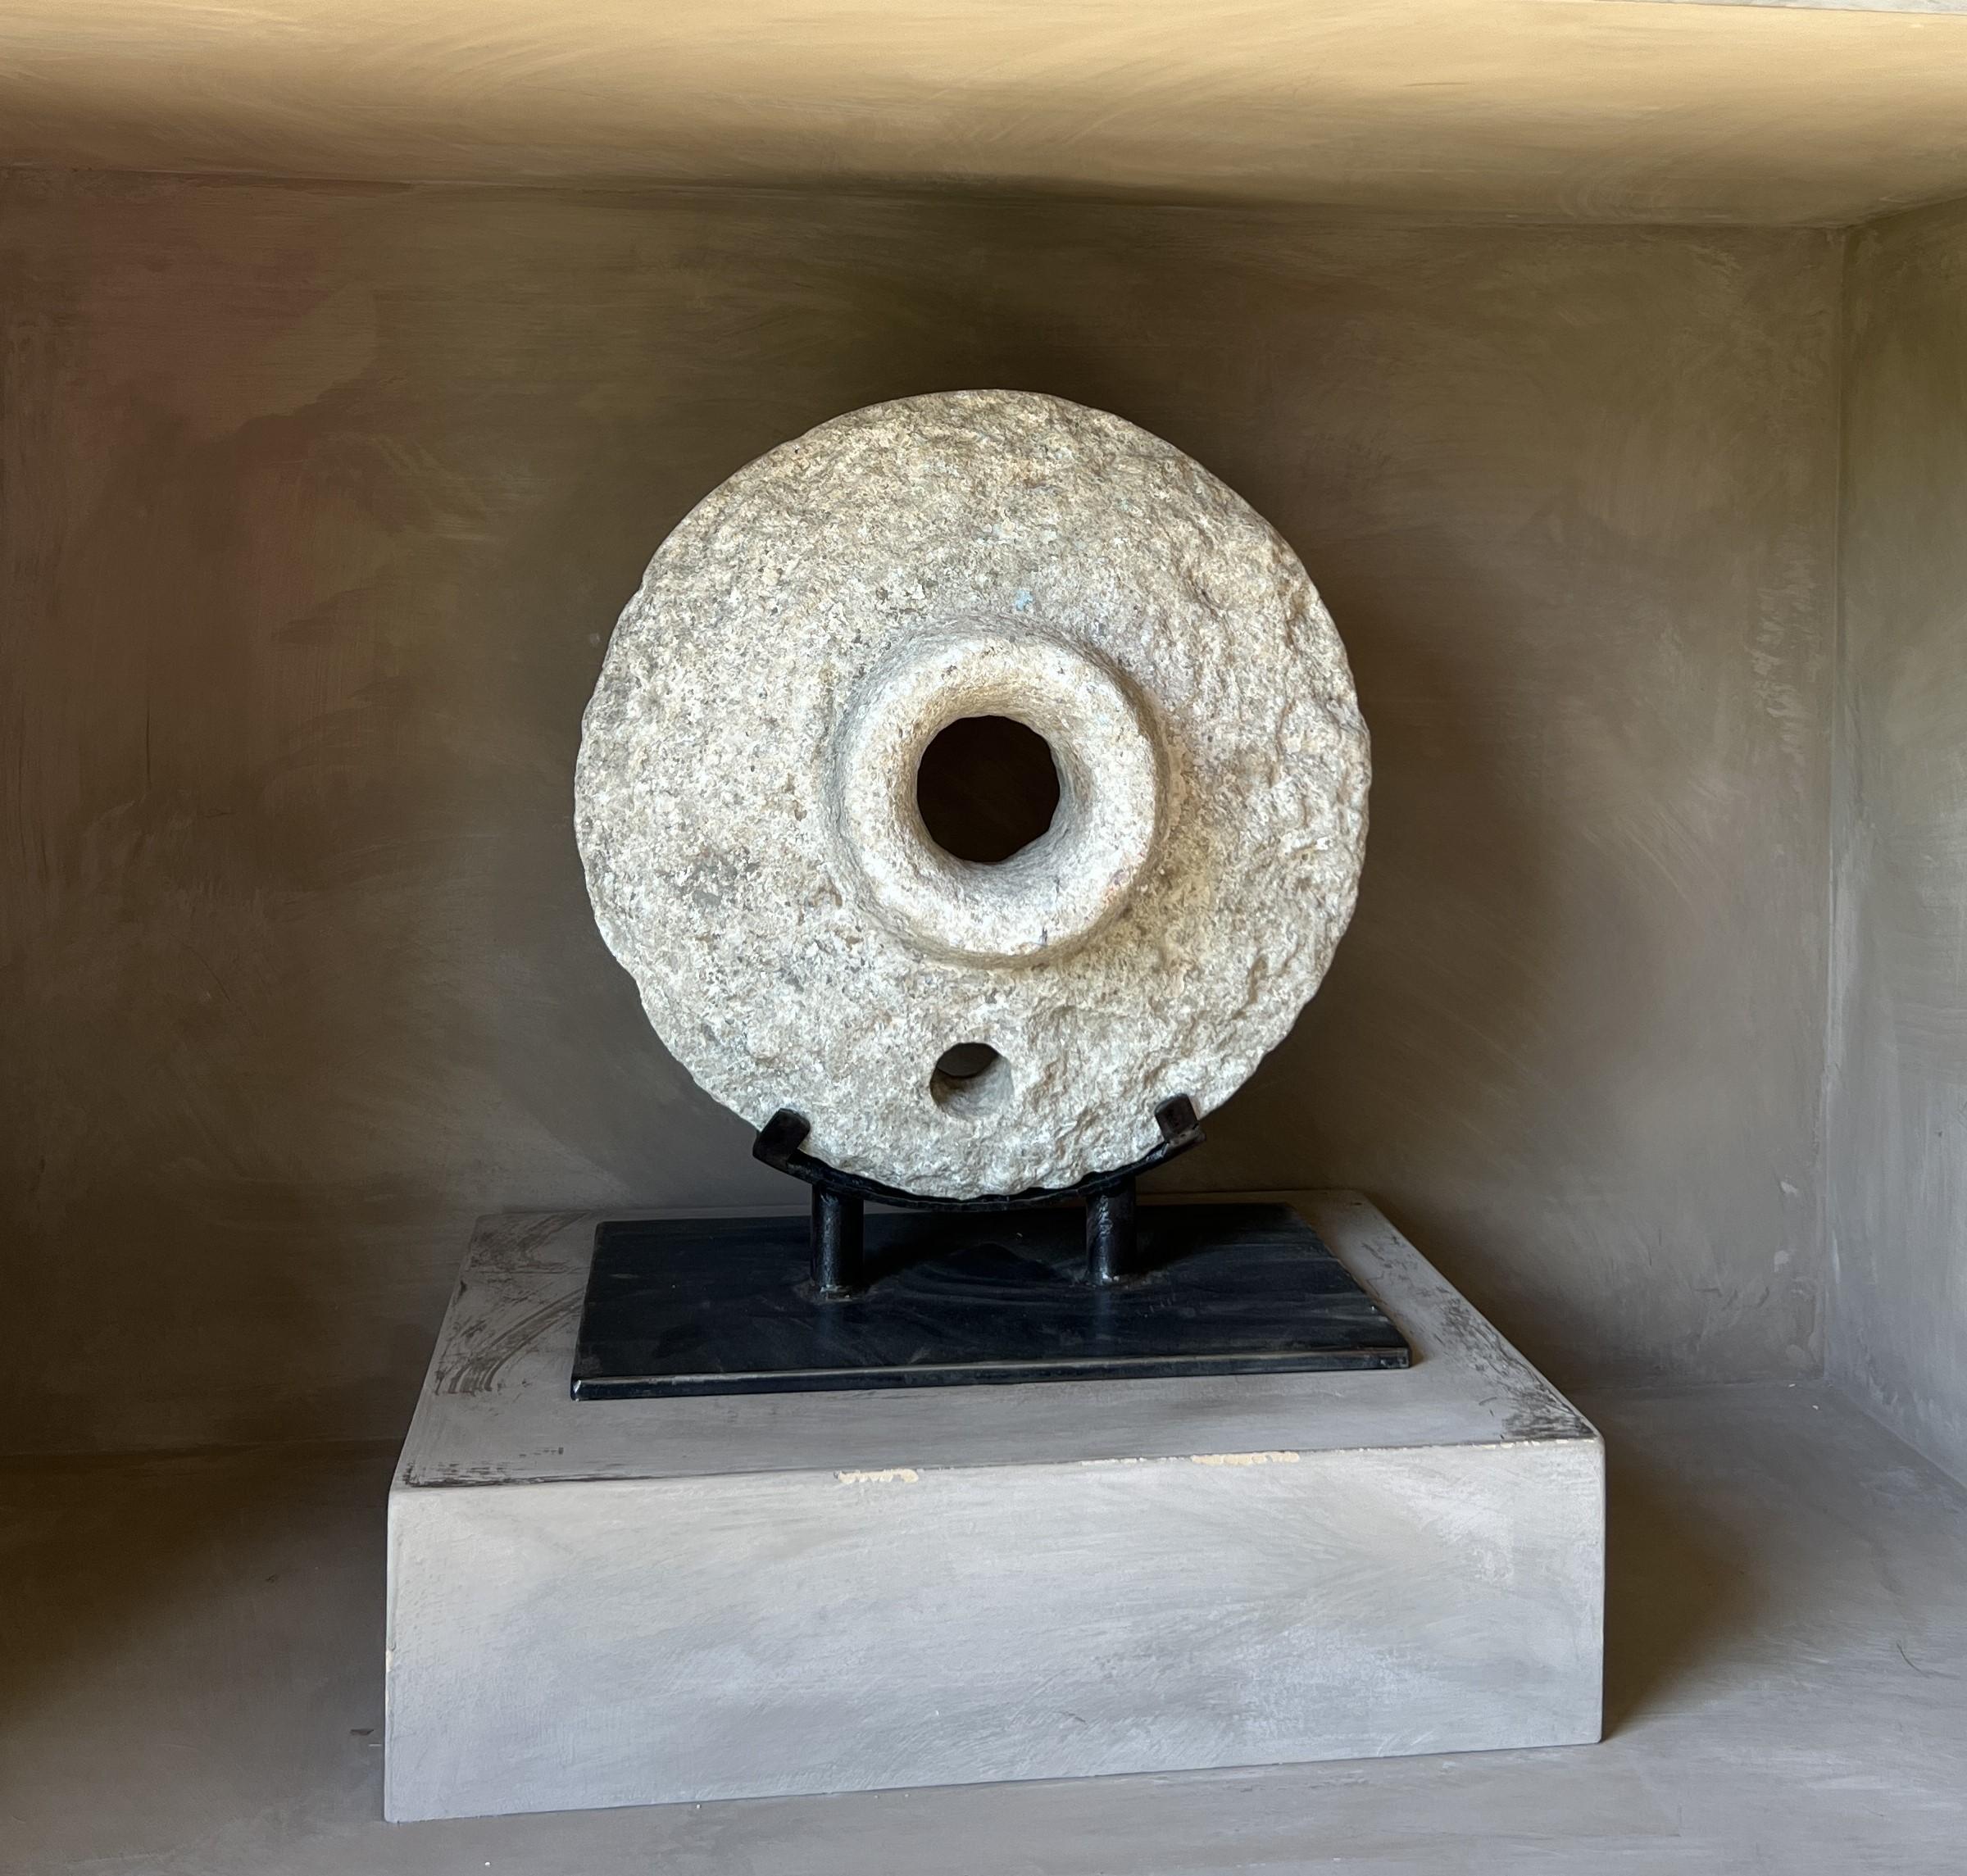 Intéressant objet circulaire en pierre. Il s'agit probablement du couvercle d'un mortier en pierre, comme on en trouve des exemples en Asie du Sud-Est. 
Monté sur un support personnalisé, il possède sa propre qualité sculpturale. Combiné à une belle